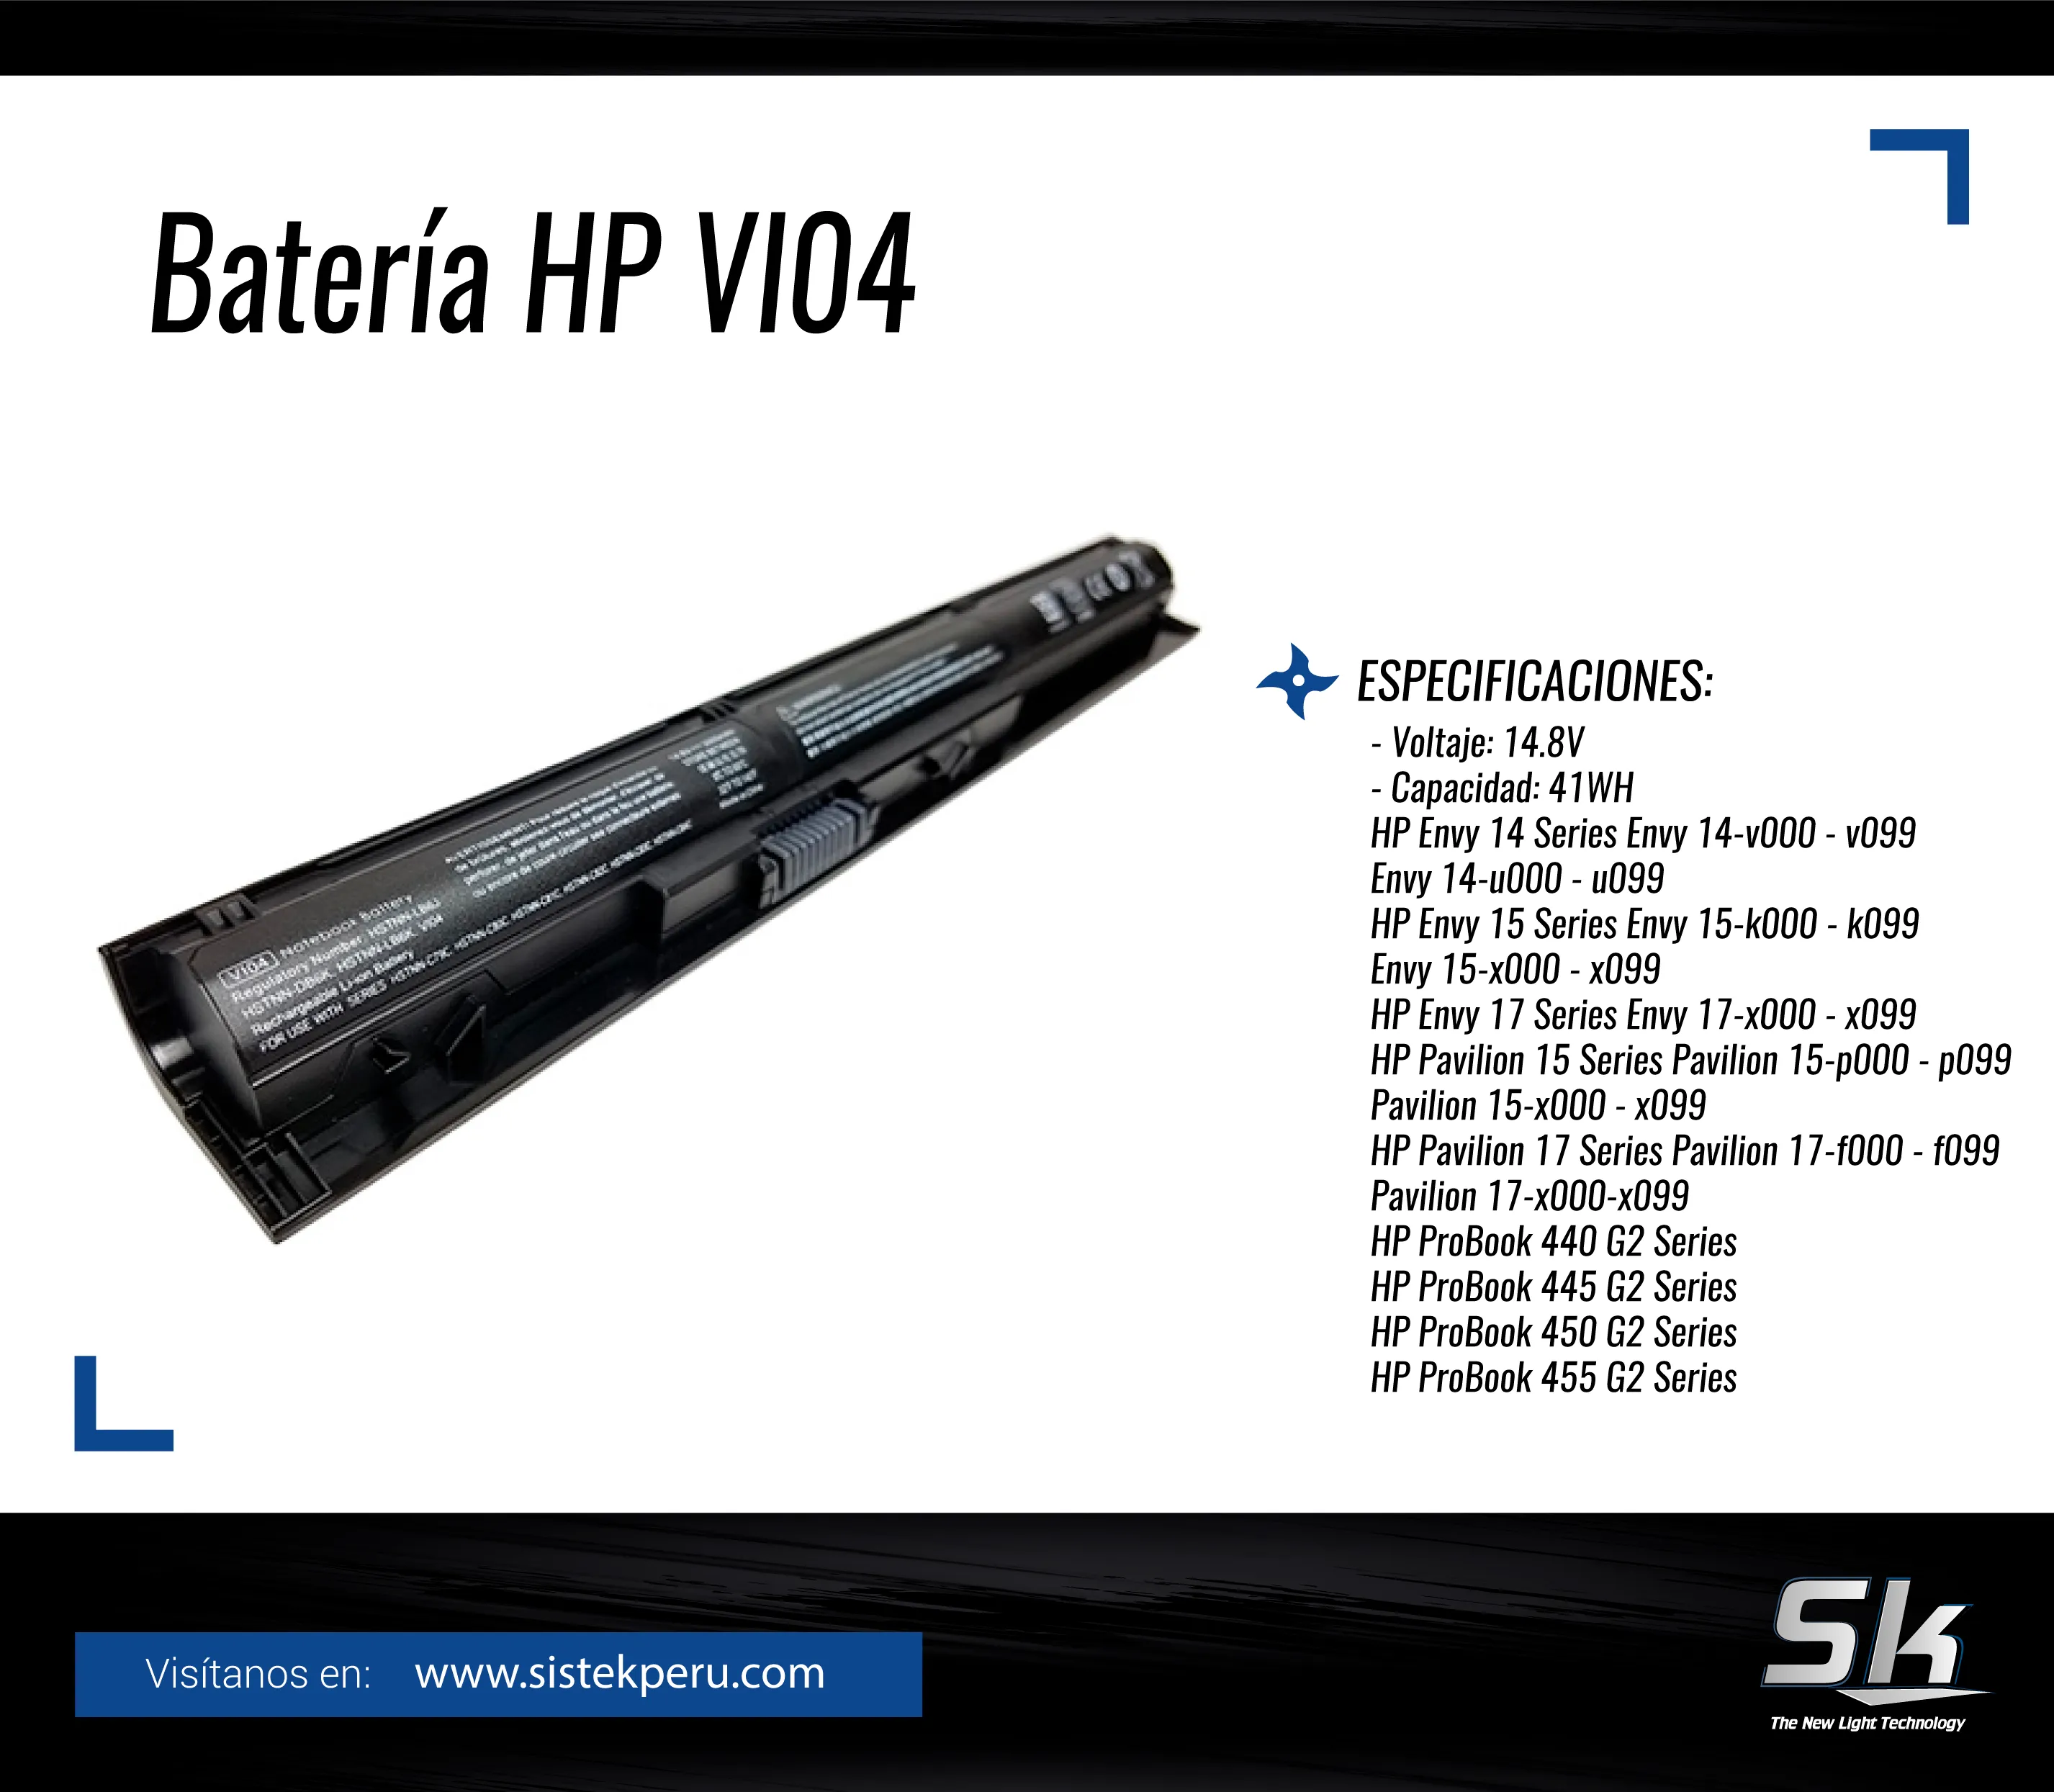 Bateria HP VI04-x